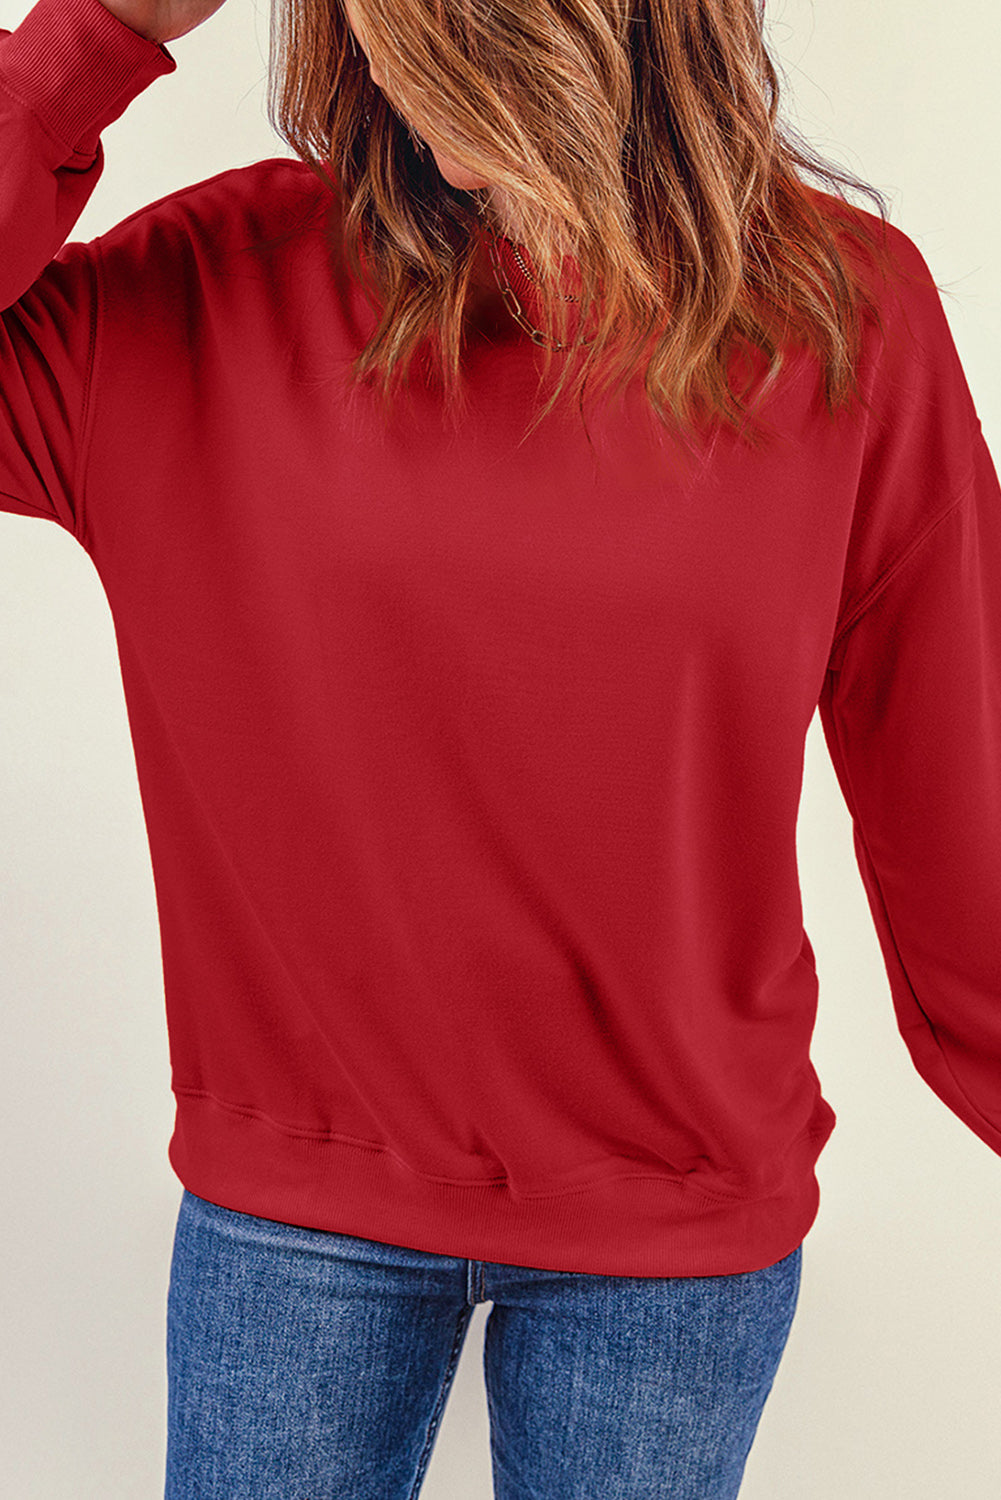 Feuriges rotes, einfarbiges Pullover-Sweatshirt mit Rundhalsausschnitt